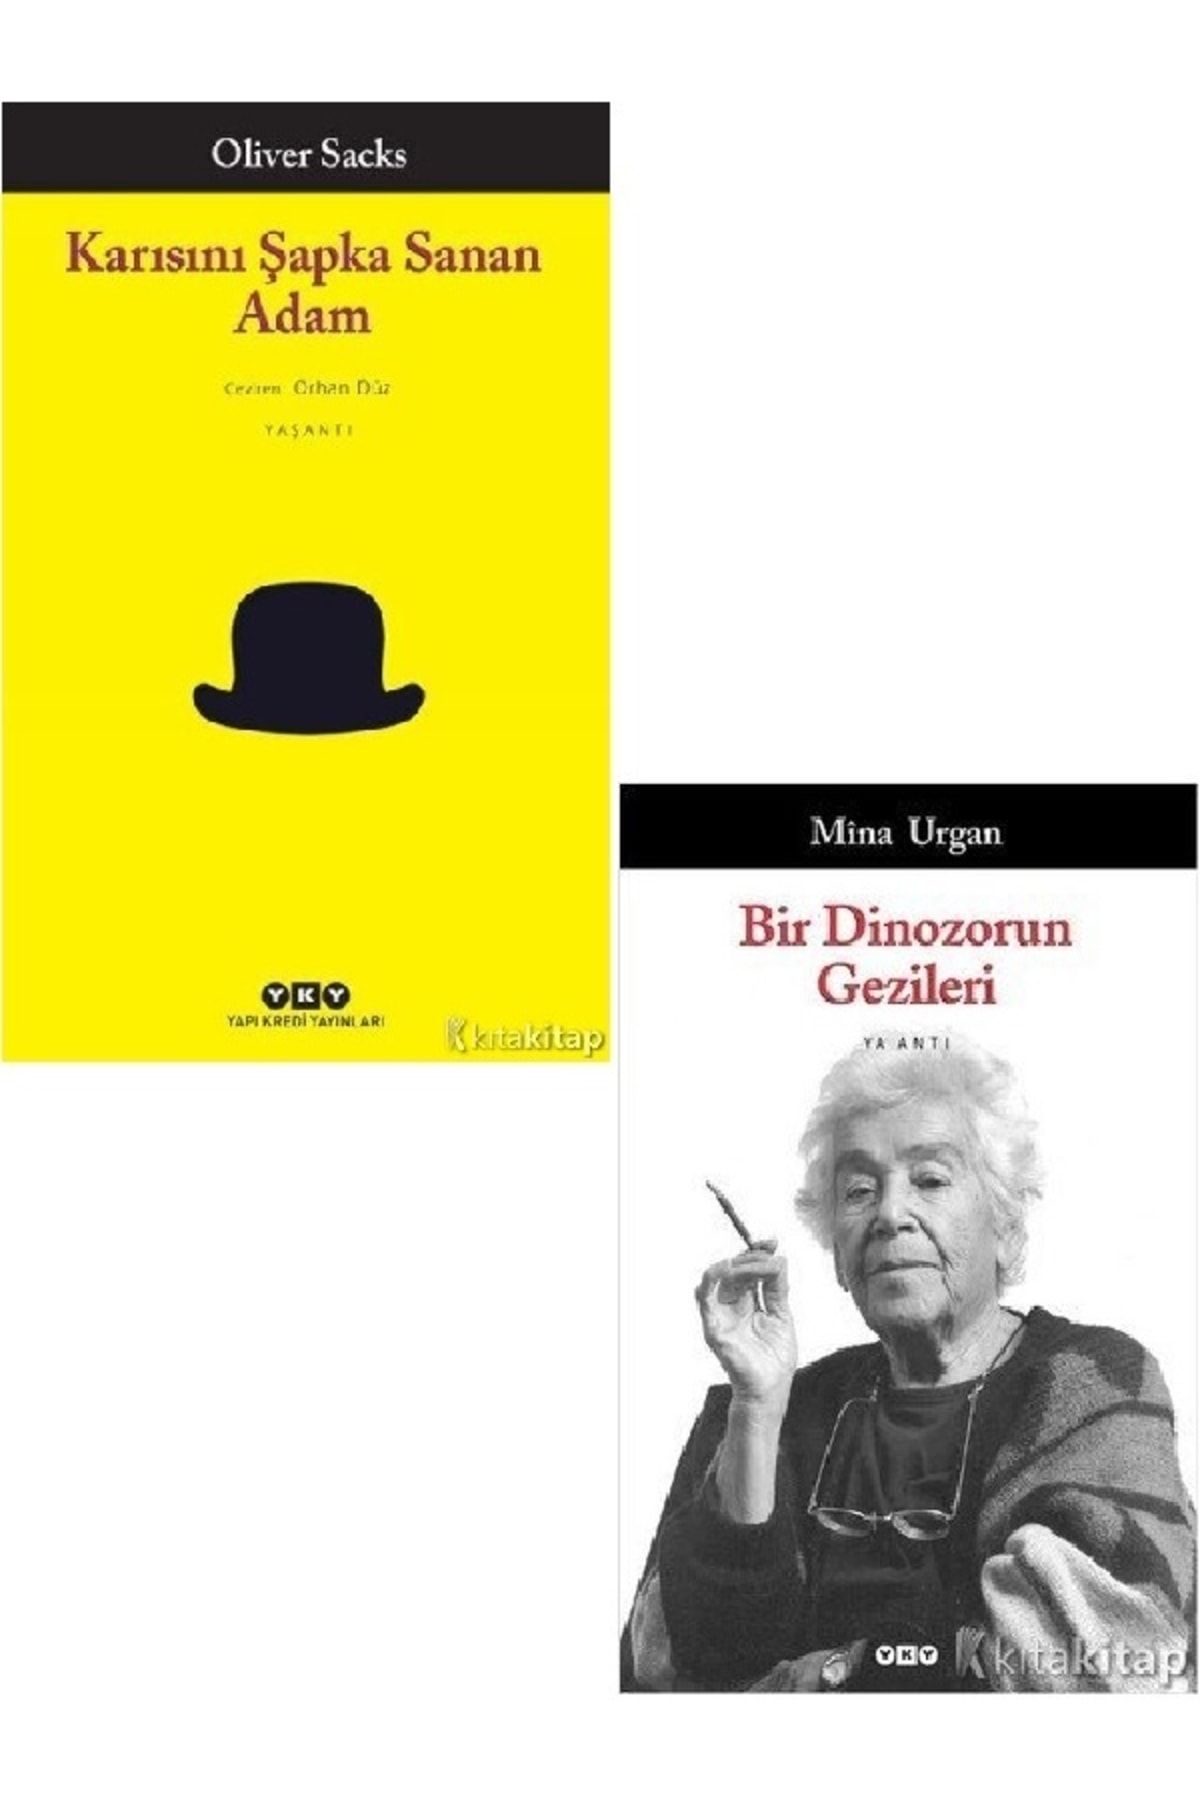 Kronik Kitap Karısını Şapka Sanan Adam - Bir Dinozorun Gezileri - Mina Urgan - Oliver Sacks 2 Kitap Set